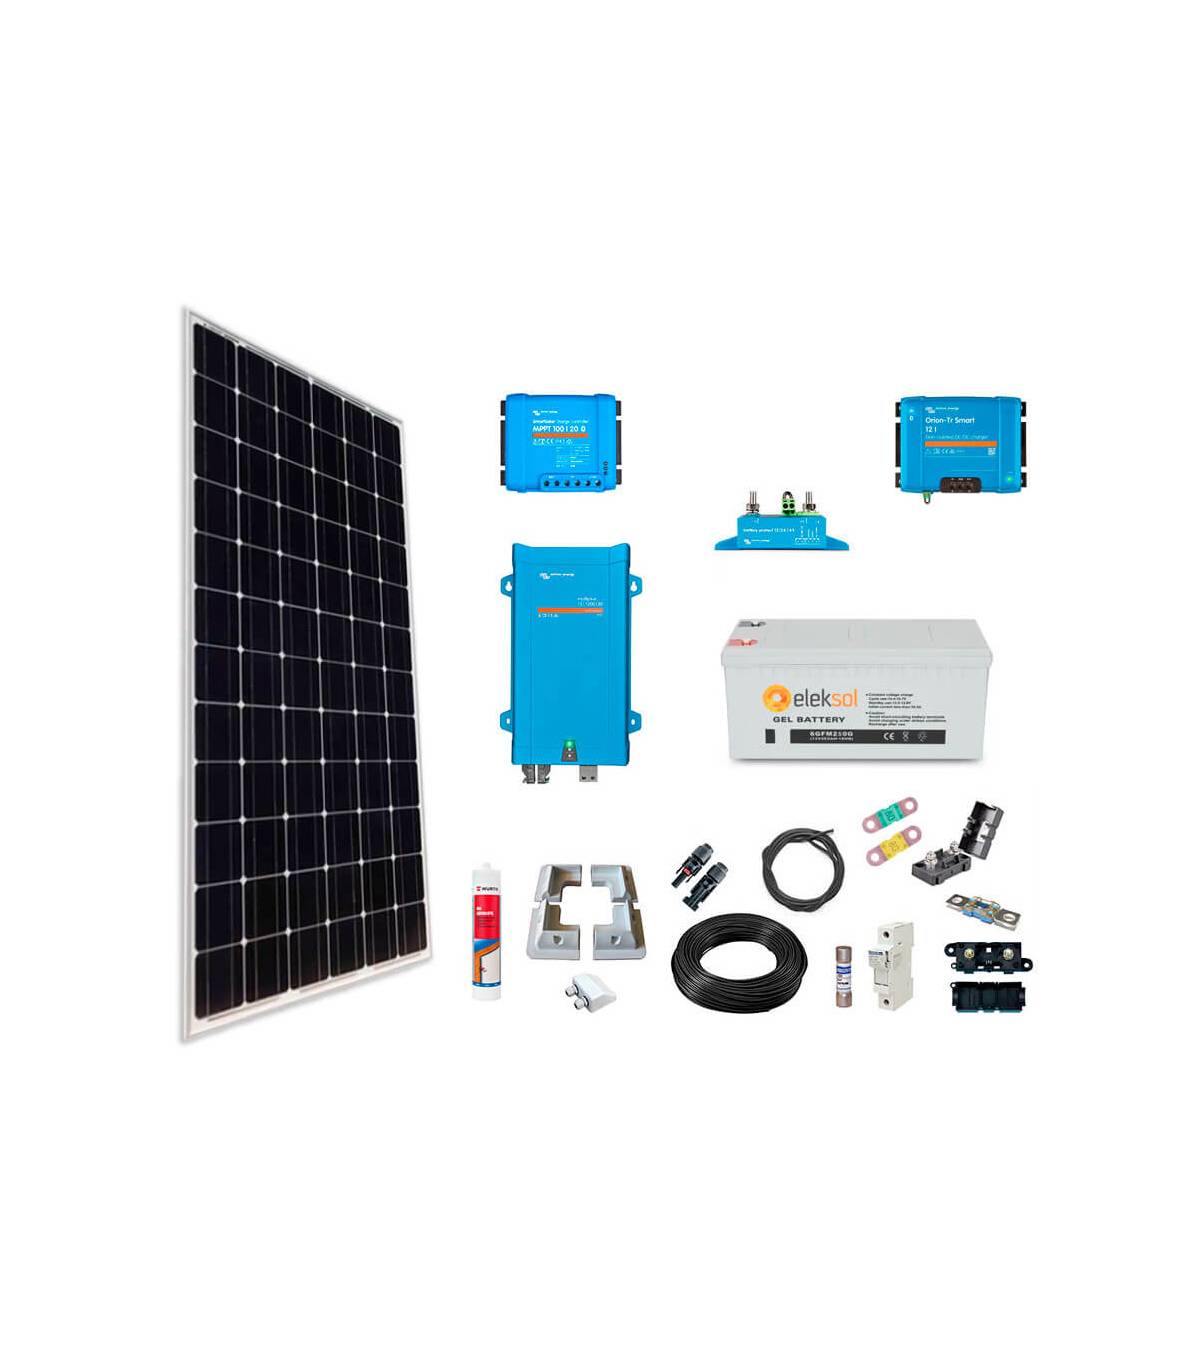  ANUU Kit de energía solar de 800 W y 18 V, paneles solares  flexibles monocristalinos, controlador de carga solar de 40 A para RV,  remolque, cámper, marina, fuera de la red